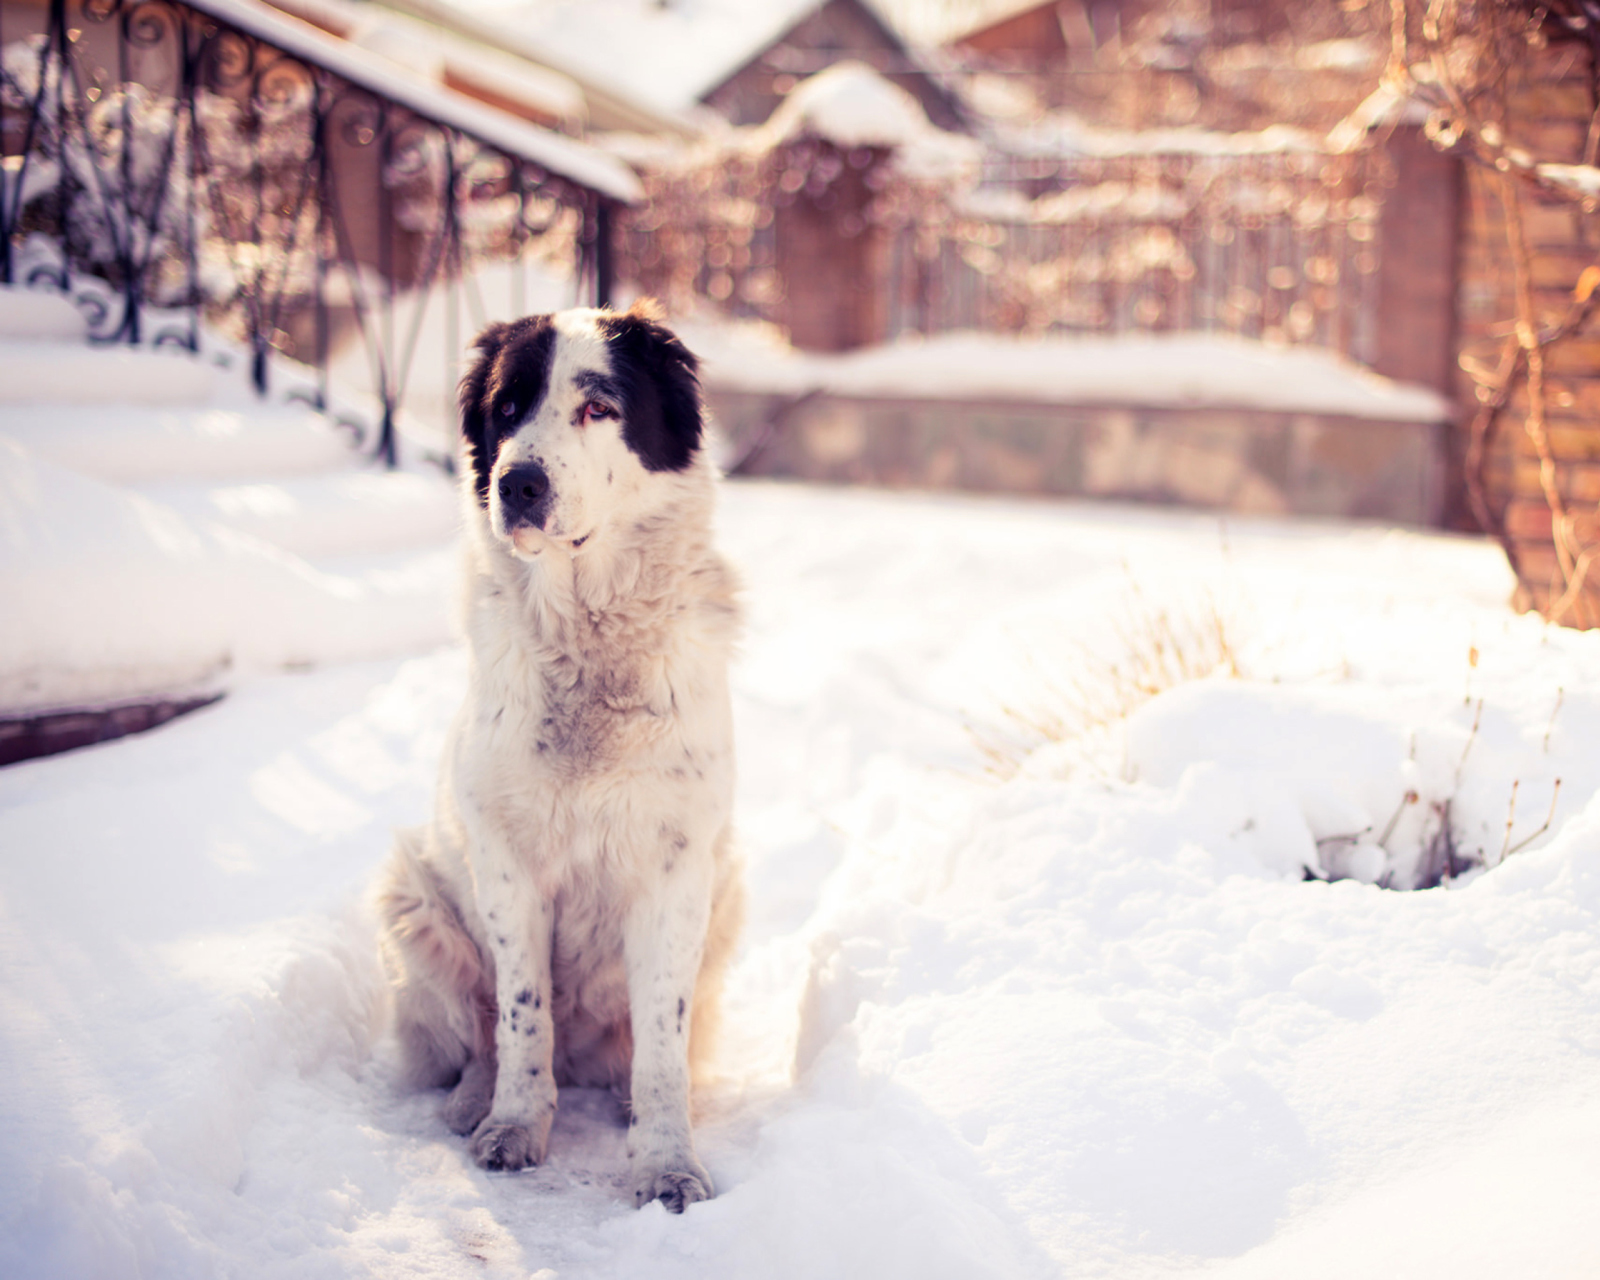 Das Dog In Snowy Yard Wallpaper 1600x1280